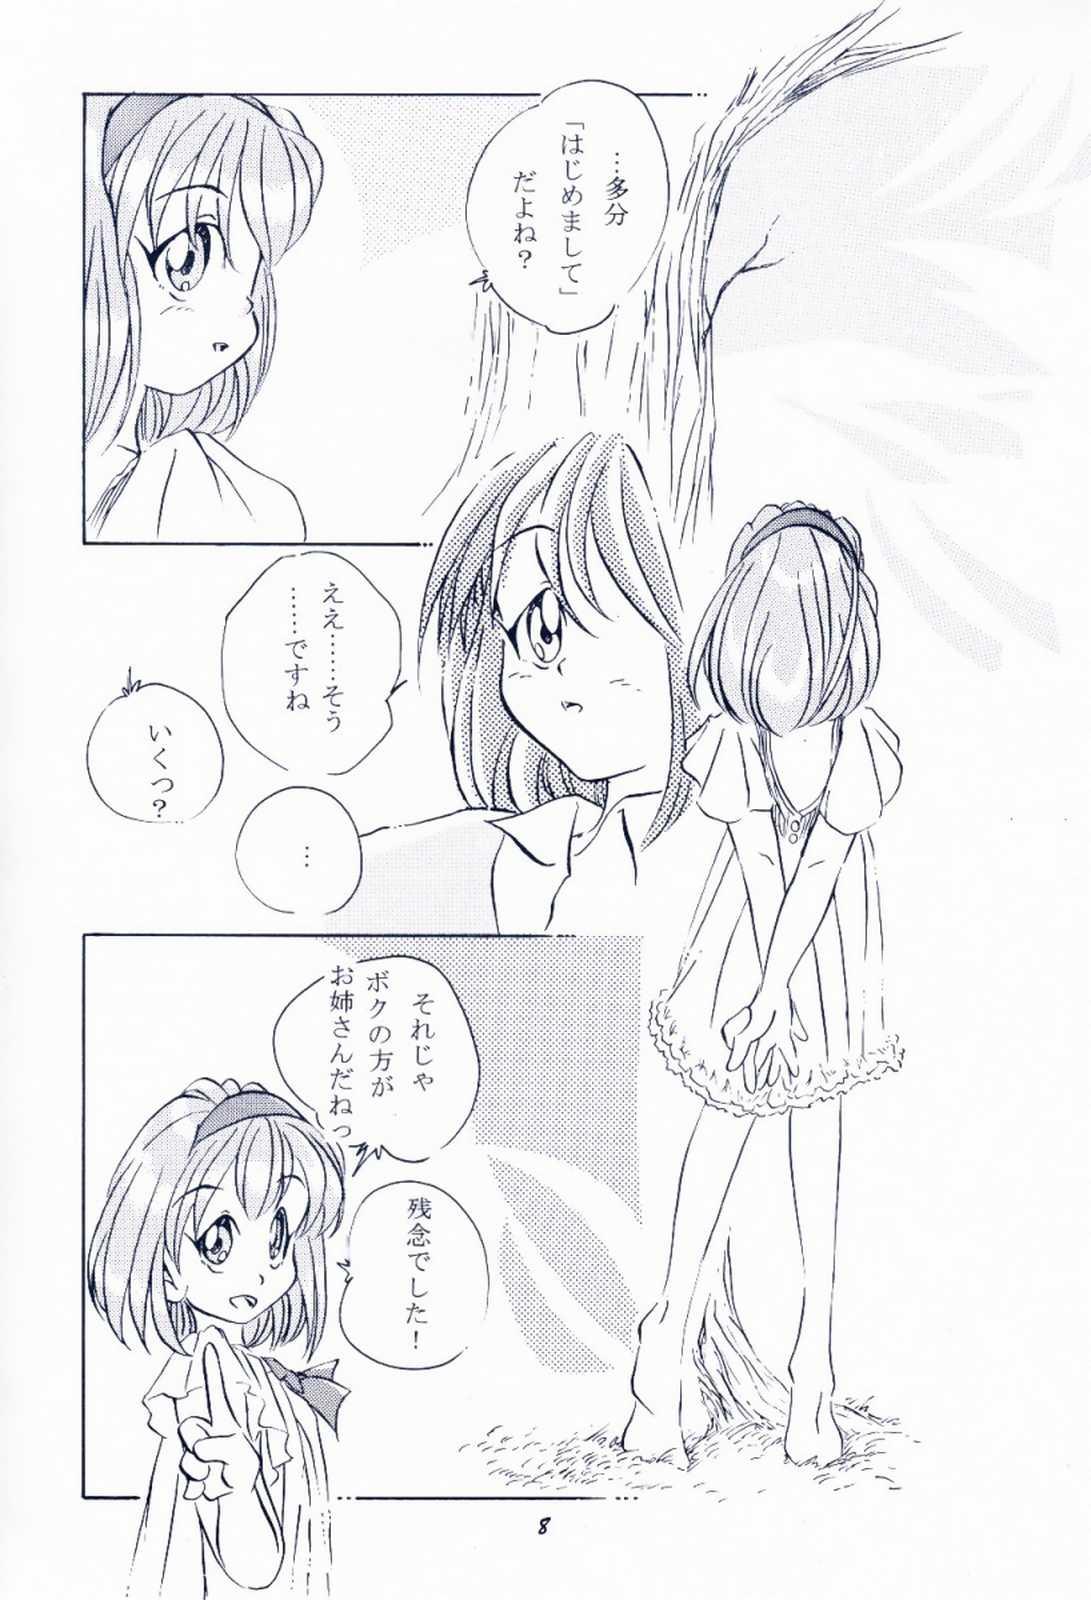 No Condom Maido Osawagaseshimasu 7 - Kanon Comic party Web - Page 7